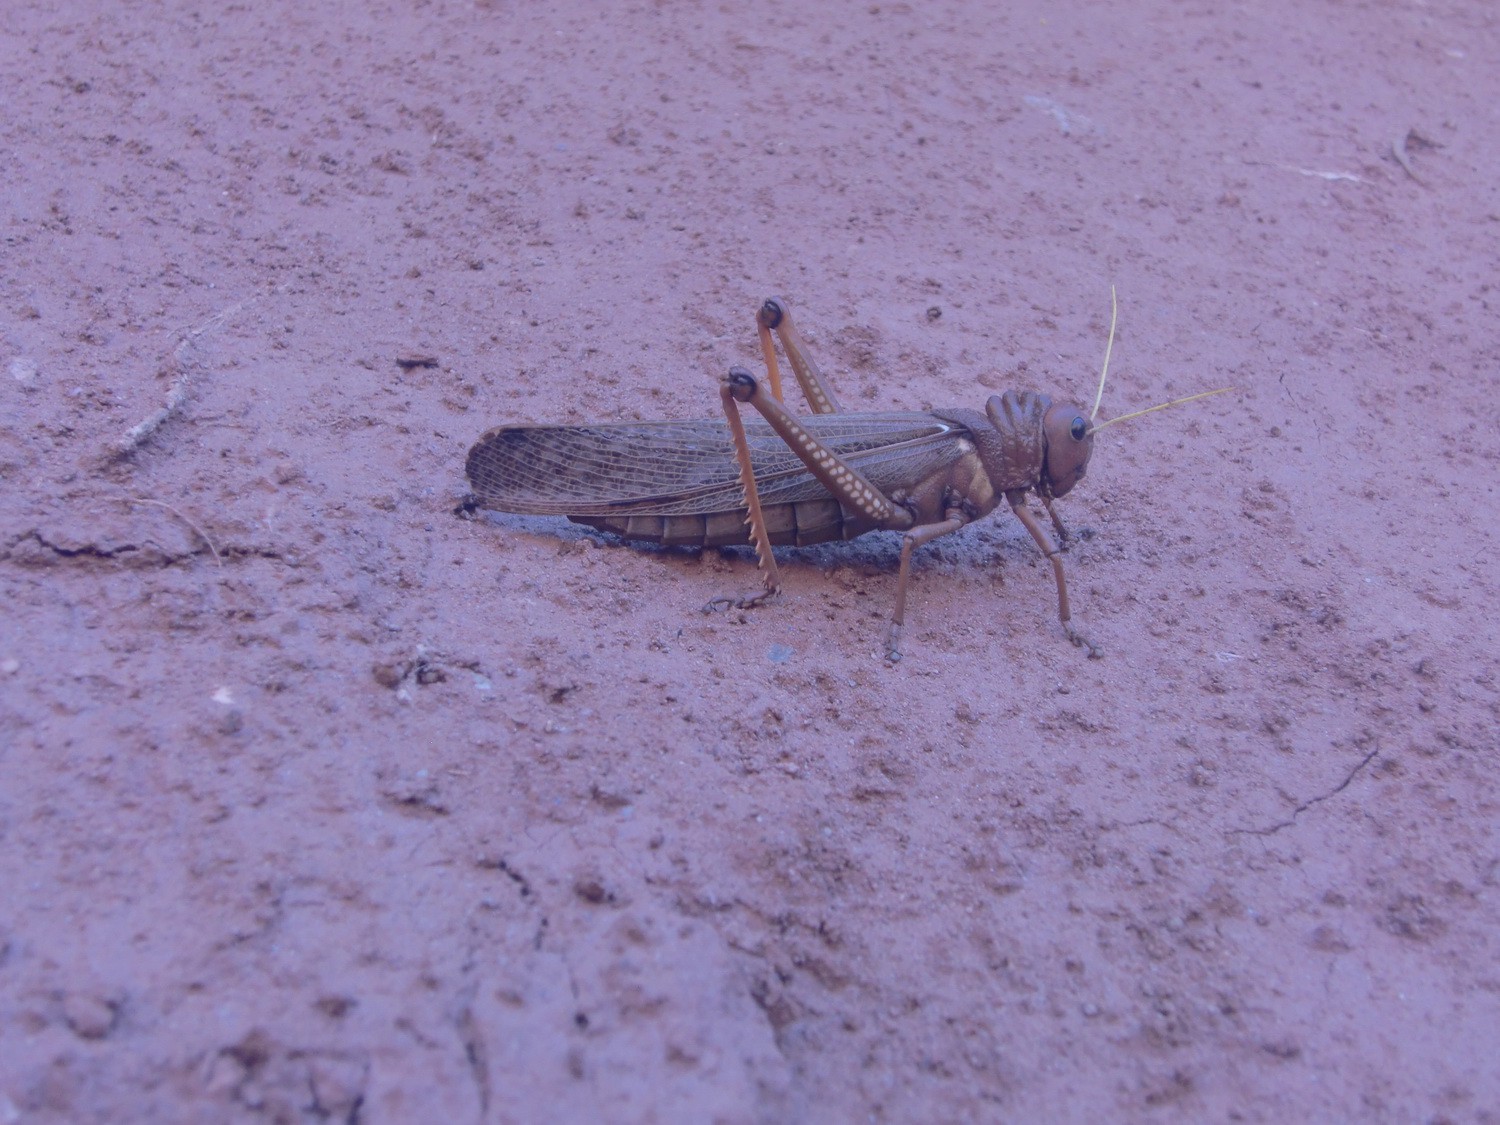 10 cm big locust